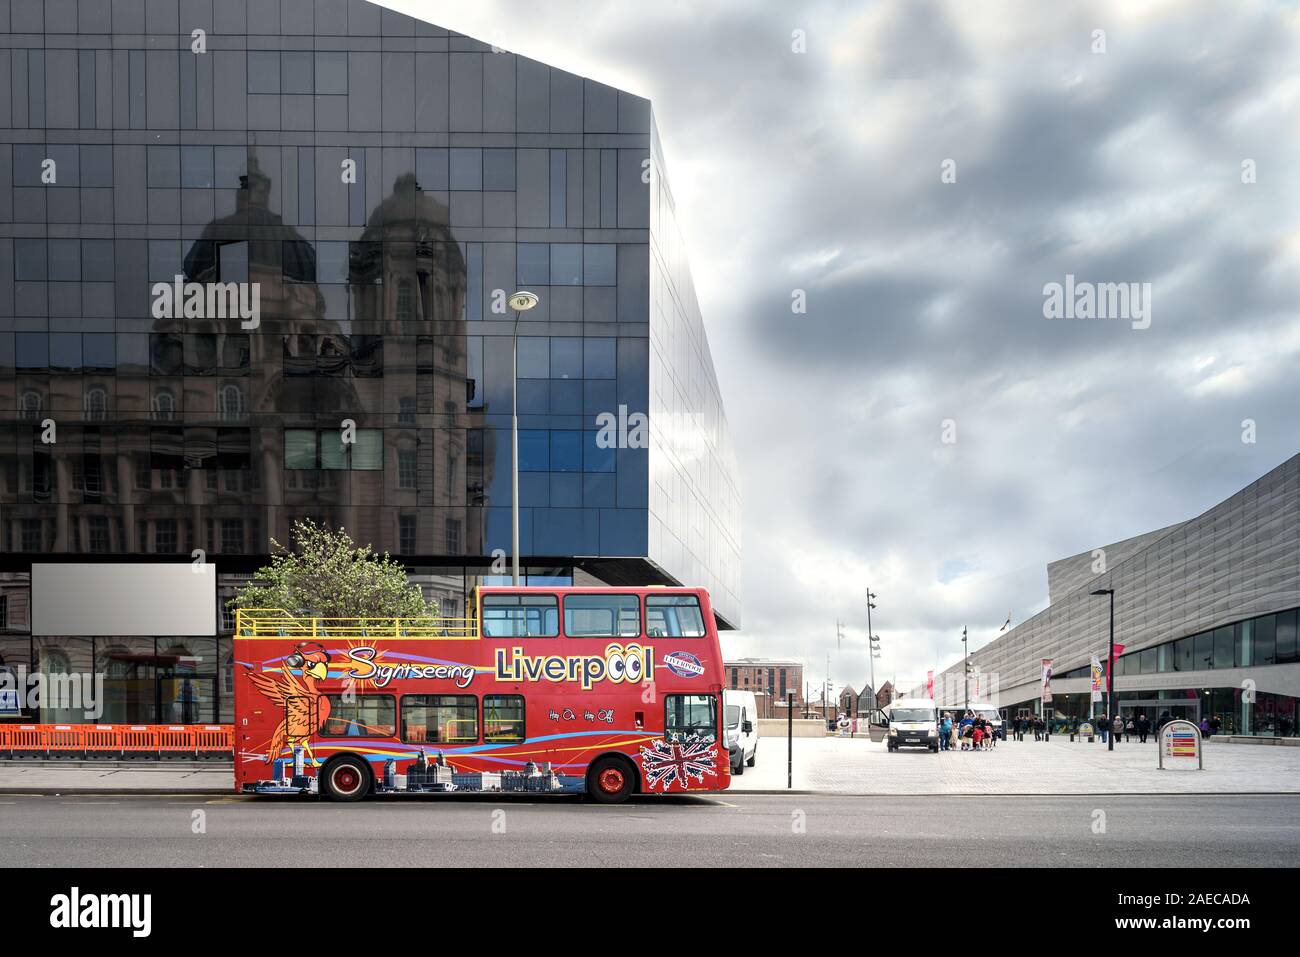 Liverpool, Reino Unido-19 DE MAYO, 2015:Hop On hop off bus para explorar la ciudad en Liverpool, reino unido Foto de stock